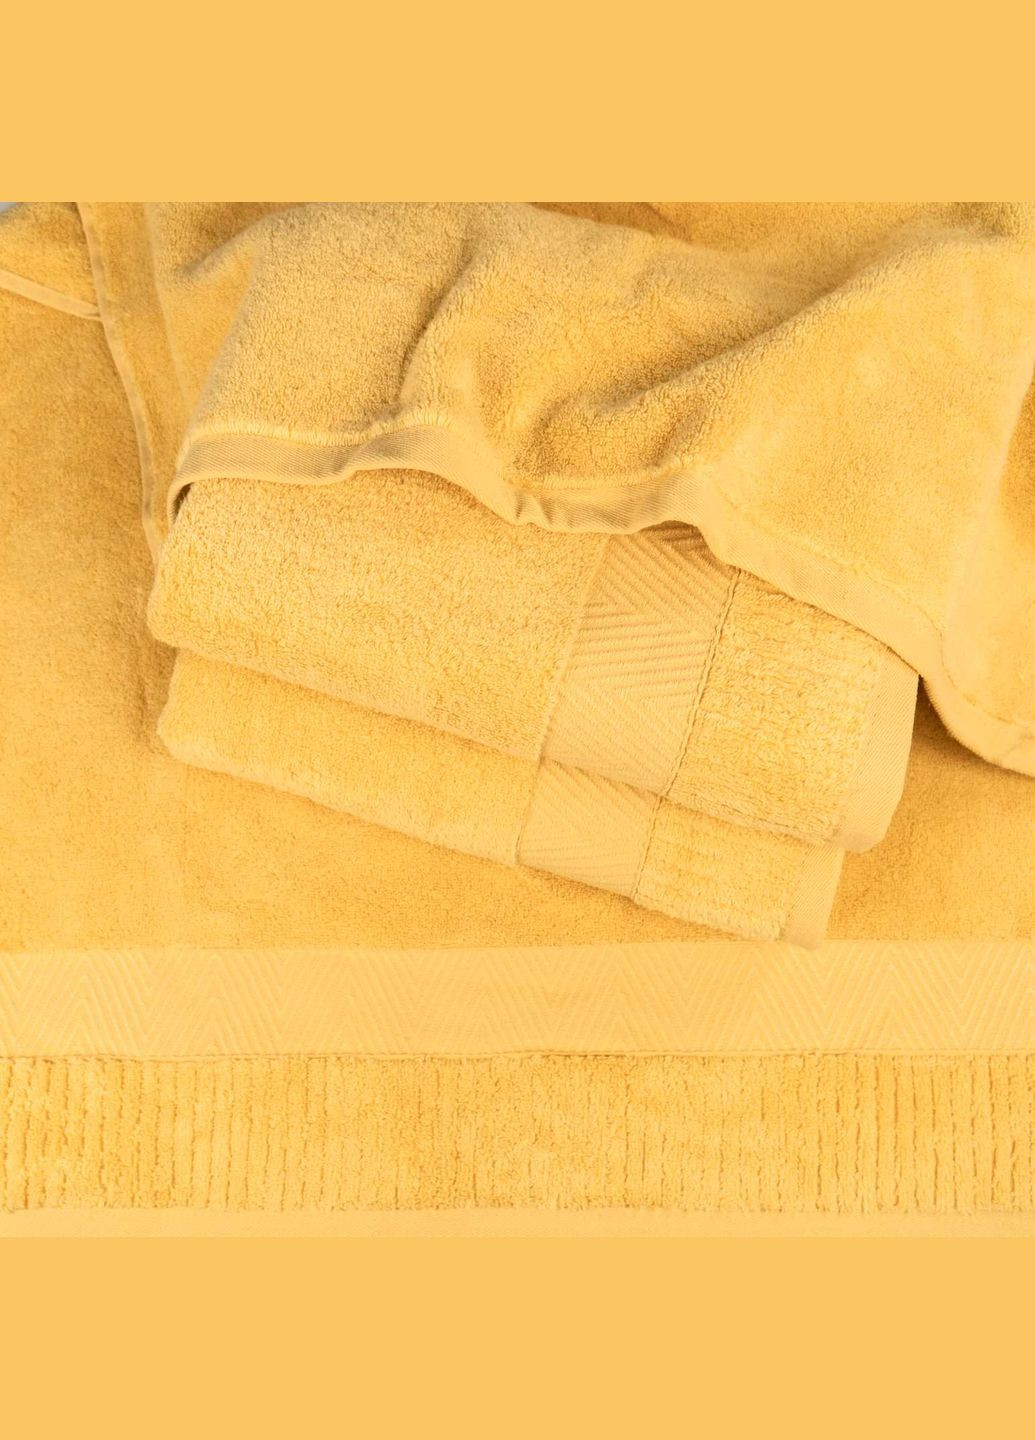 GM Textile банний махровий рушник 70x140см преміум якості зеро твіст бордюр 550г/м2 (жовтий) жовтий виробництво -